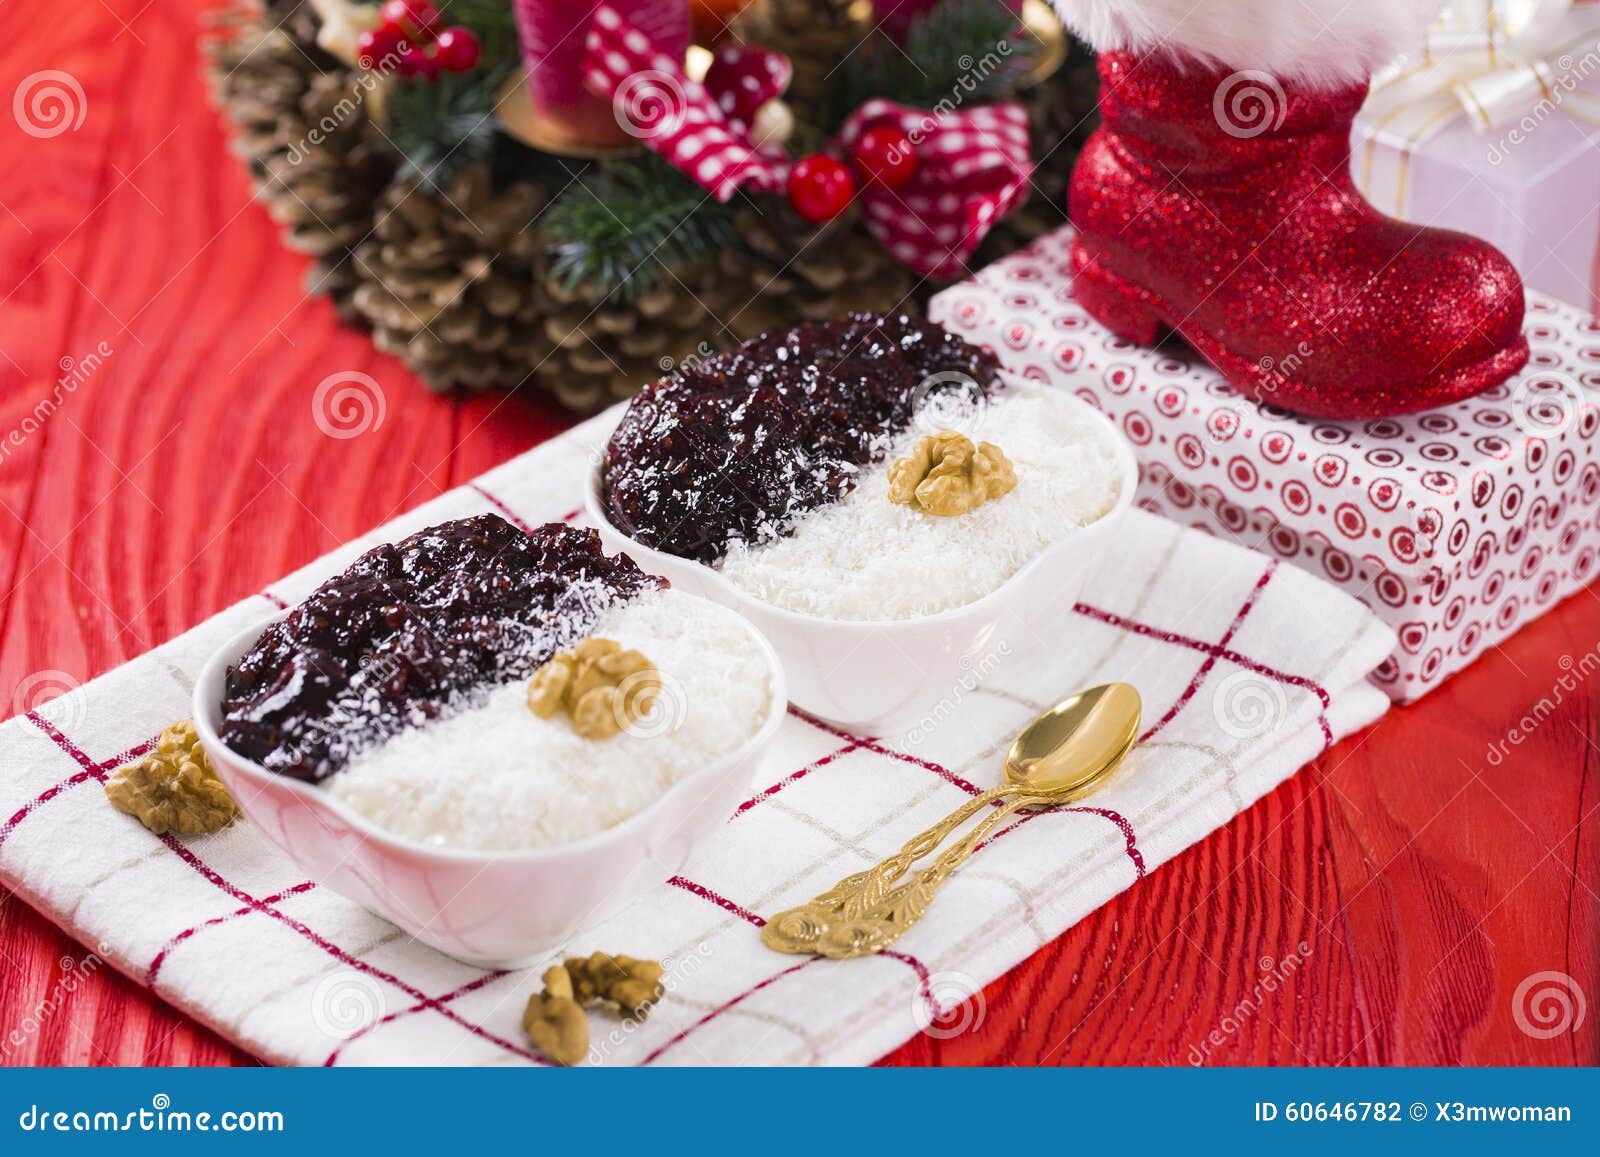 Reis-Pudding und Erdbeermarmelade mit Nüssen, neues Jahr-Dekoration in der roten Farbe